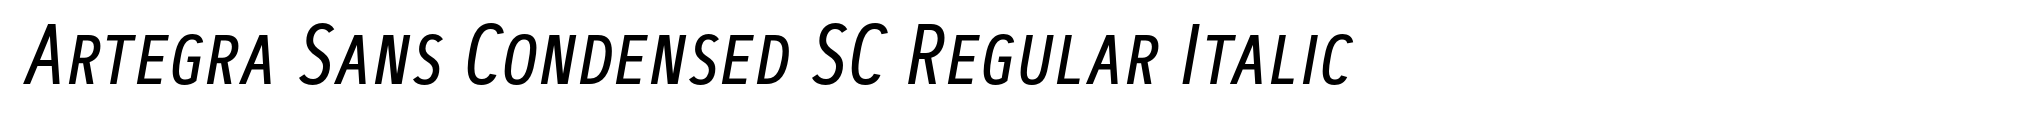 Artegra Sans Condensed SC Regular Italic image